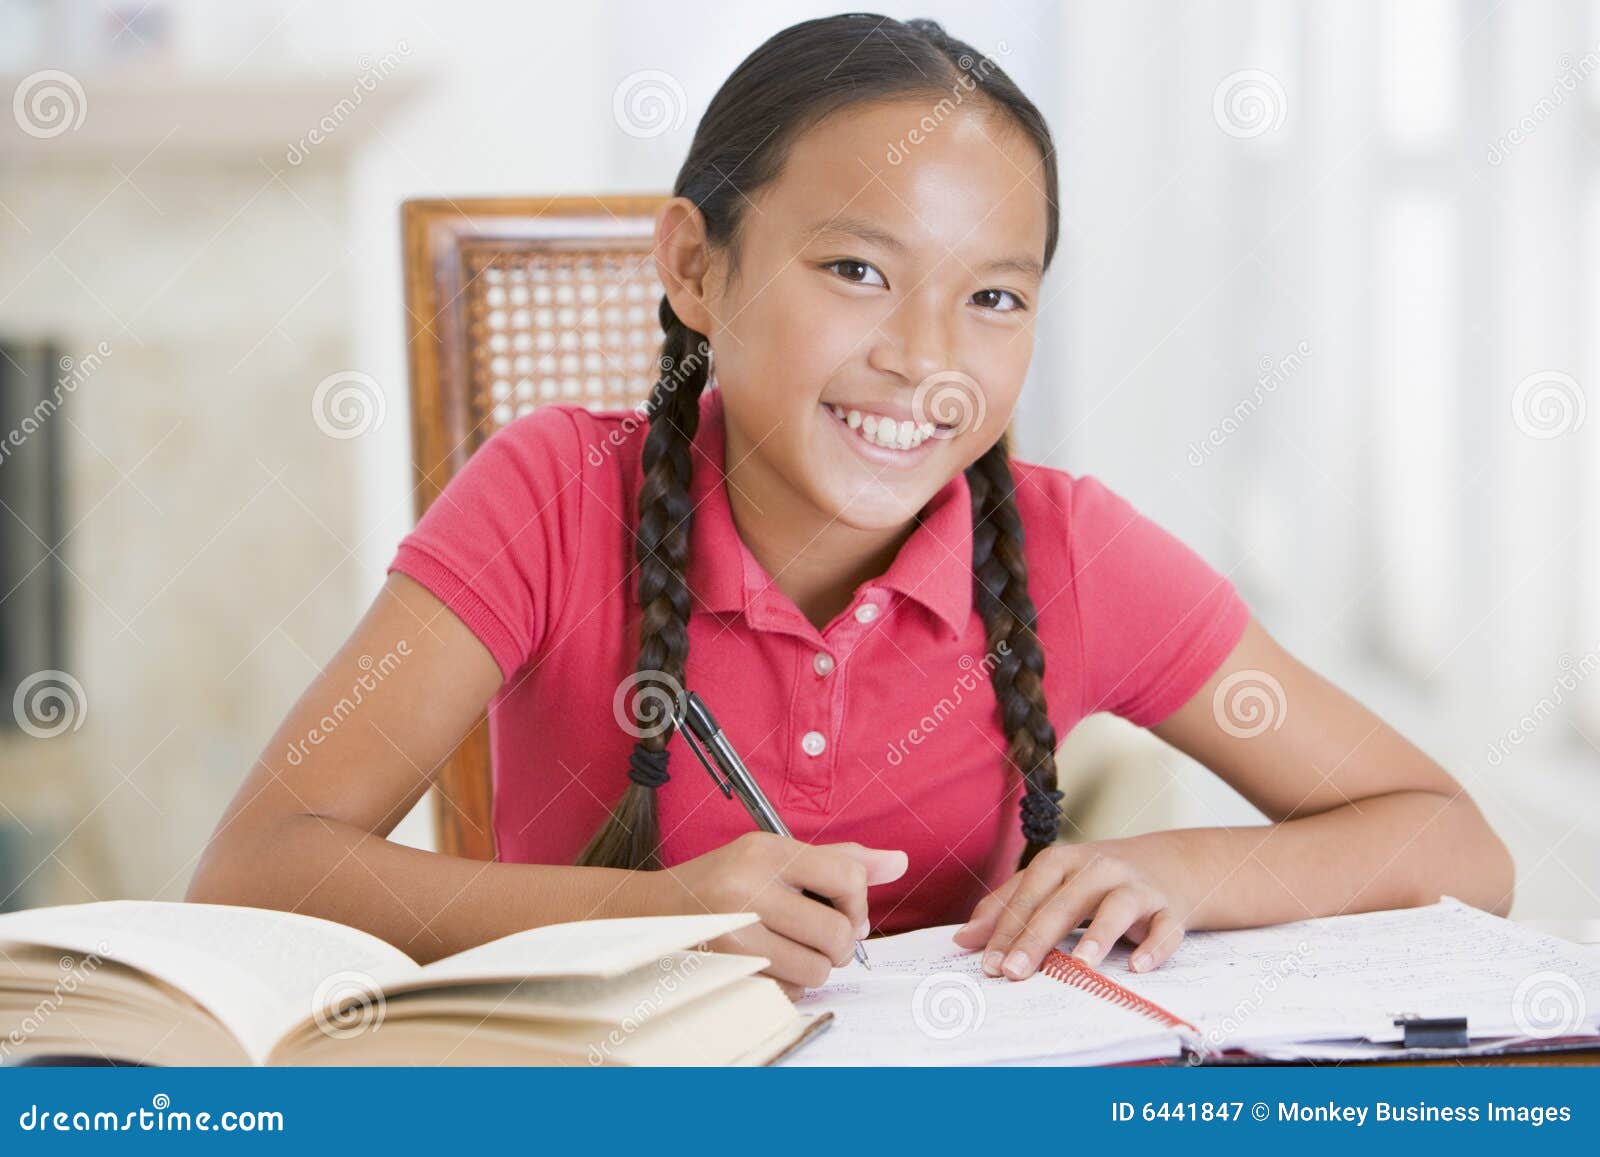 girl doing her homework